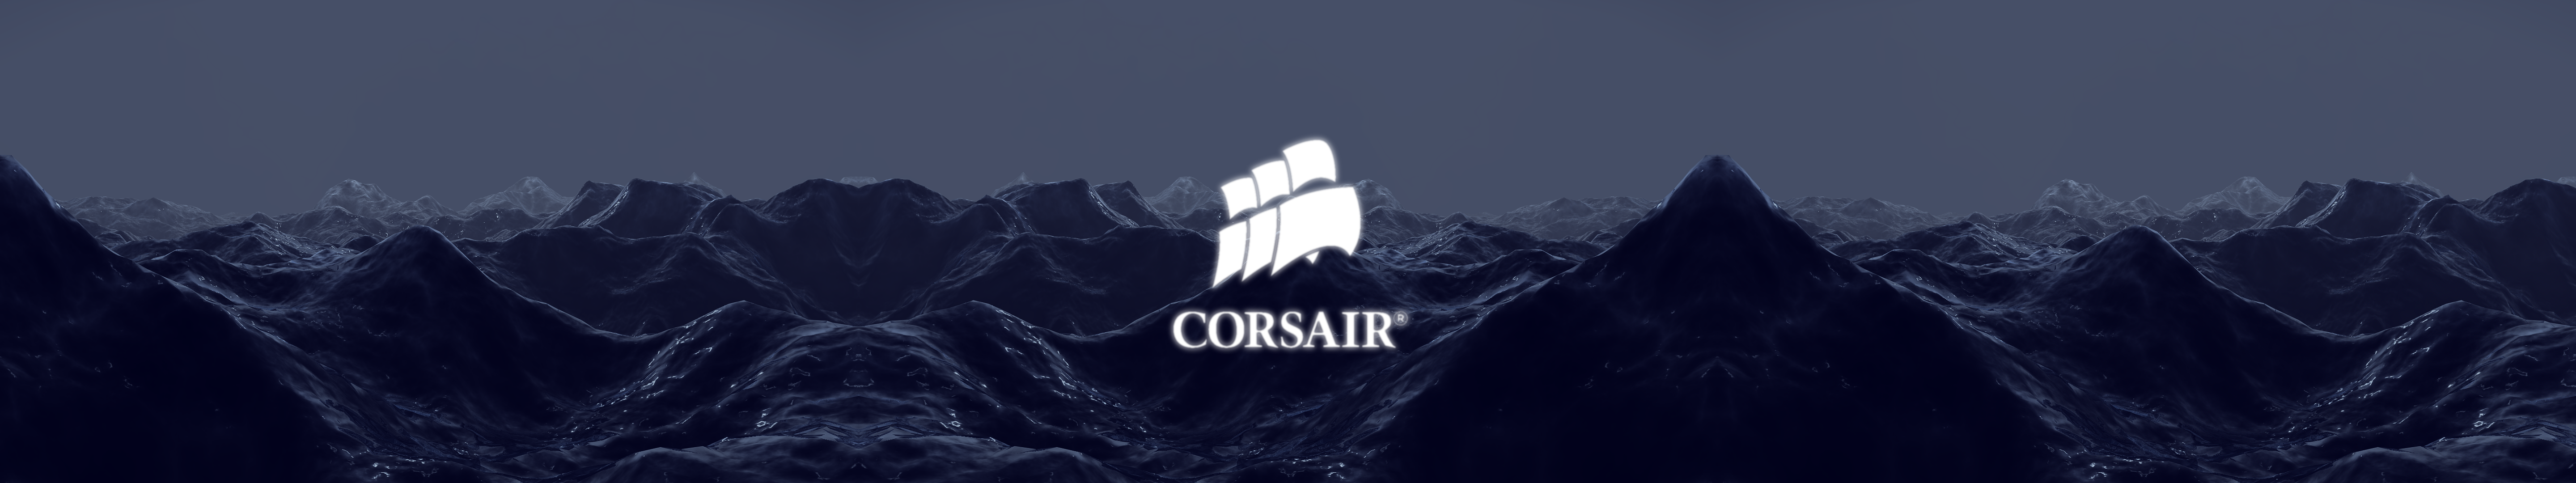 47 Corsair Gaming Wallpaper On Wallpapersafari